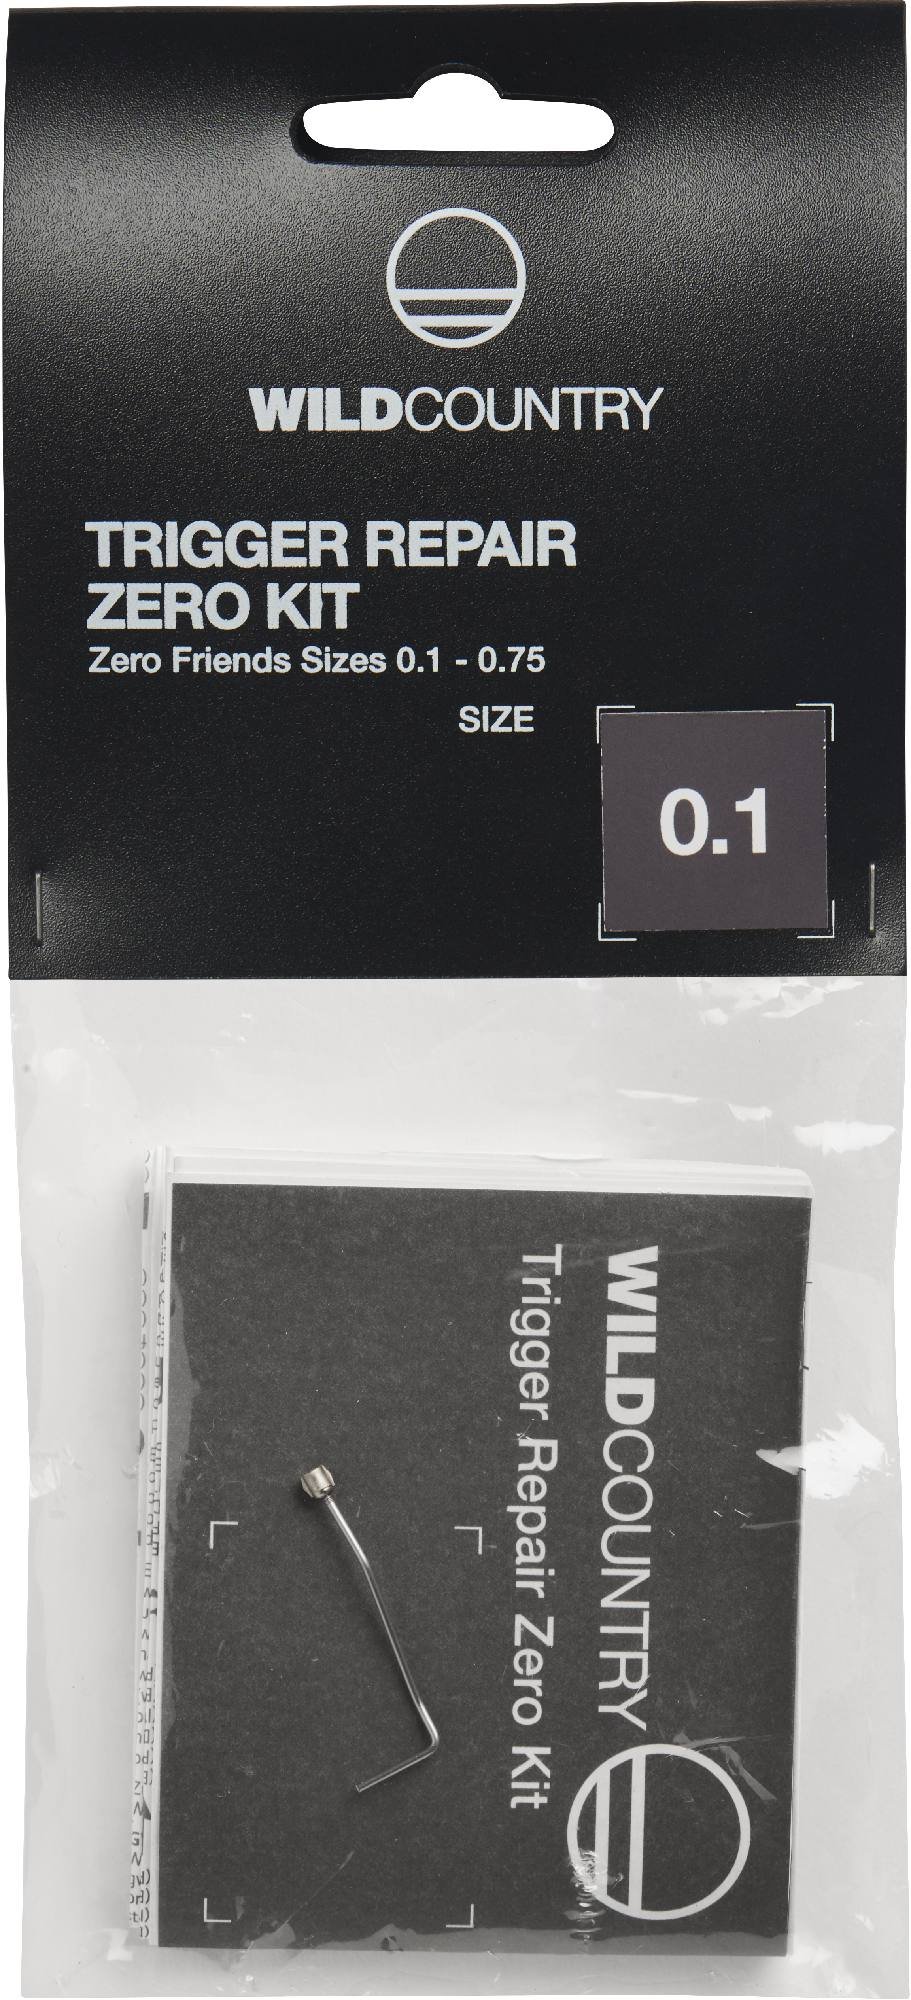 Wild Country Trigger Repair Zero kit